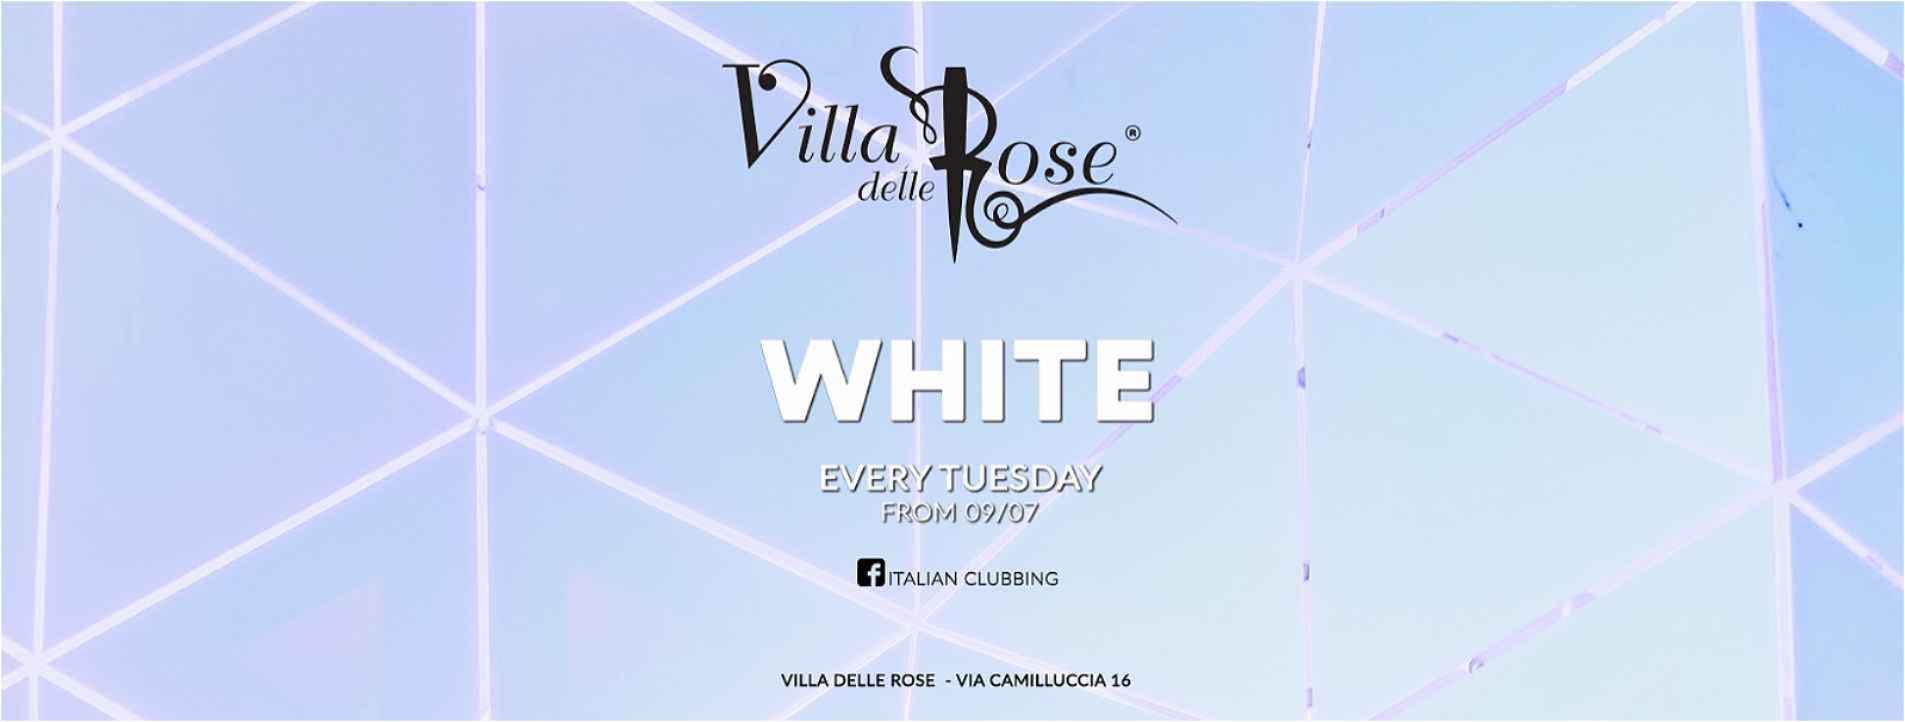 white party villa delle rose martedì 21 luglio